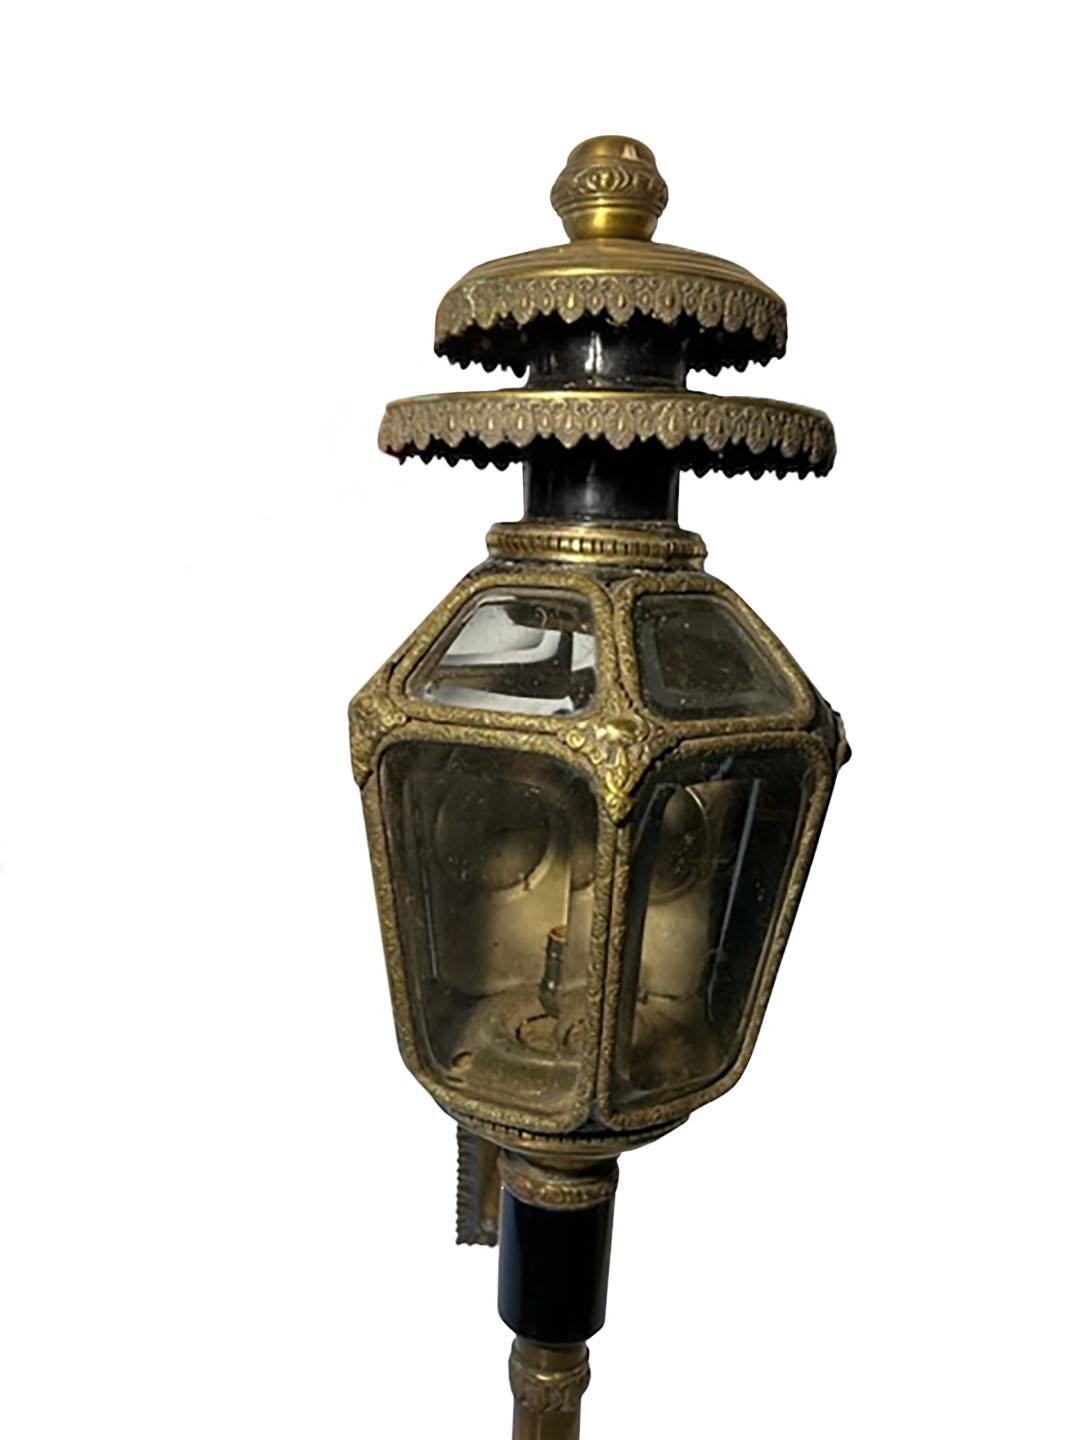 Ein Paar antike Kutschenlampen aus Messing mit original abgeschrägtem Glas, um 1870, Frankreich. Die Buslampen sind fest verdrahtet, müssen aber von einem Elektriker überprüft werden, scheinen aber in Ordnung zu sein. Keine Garantien für